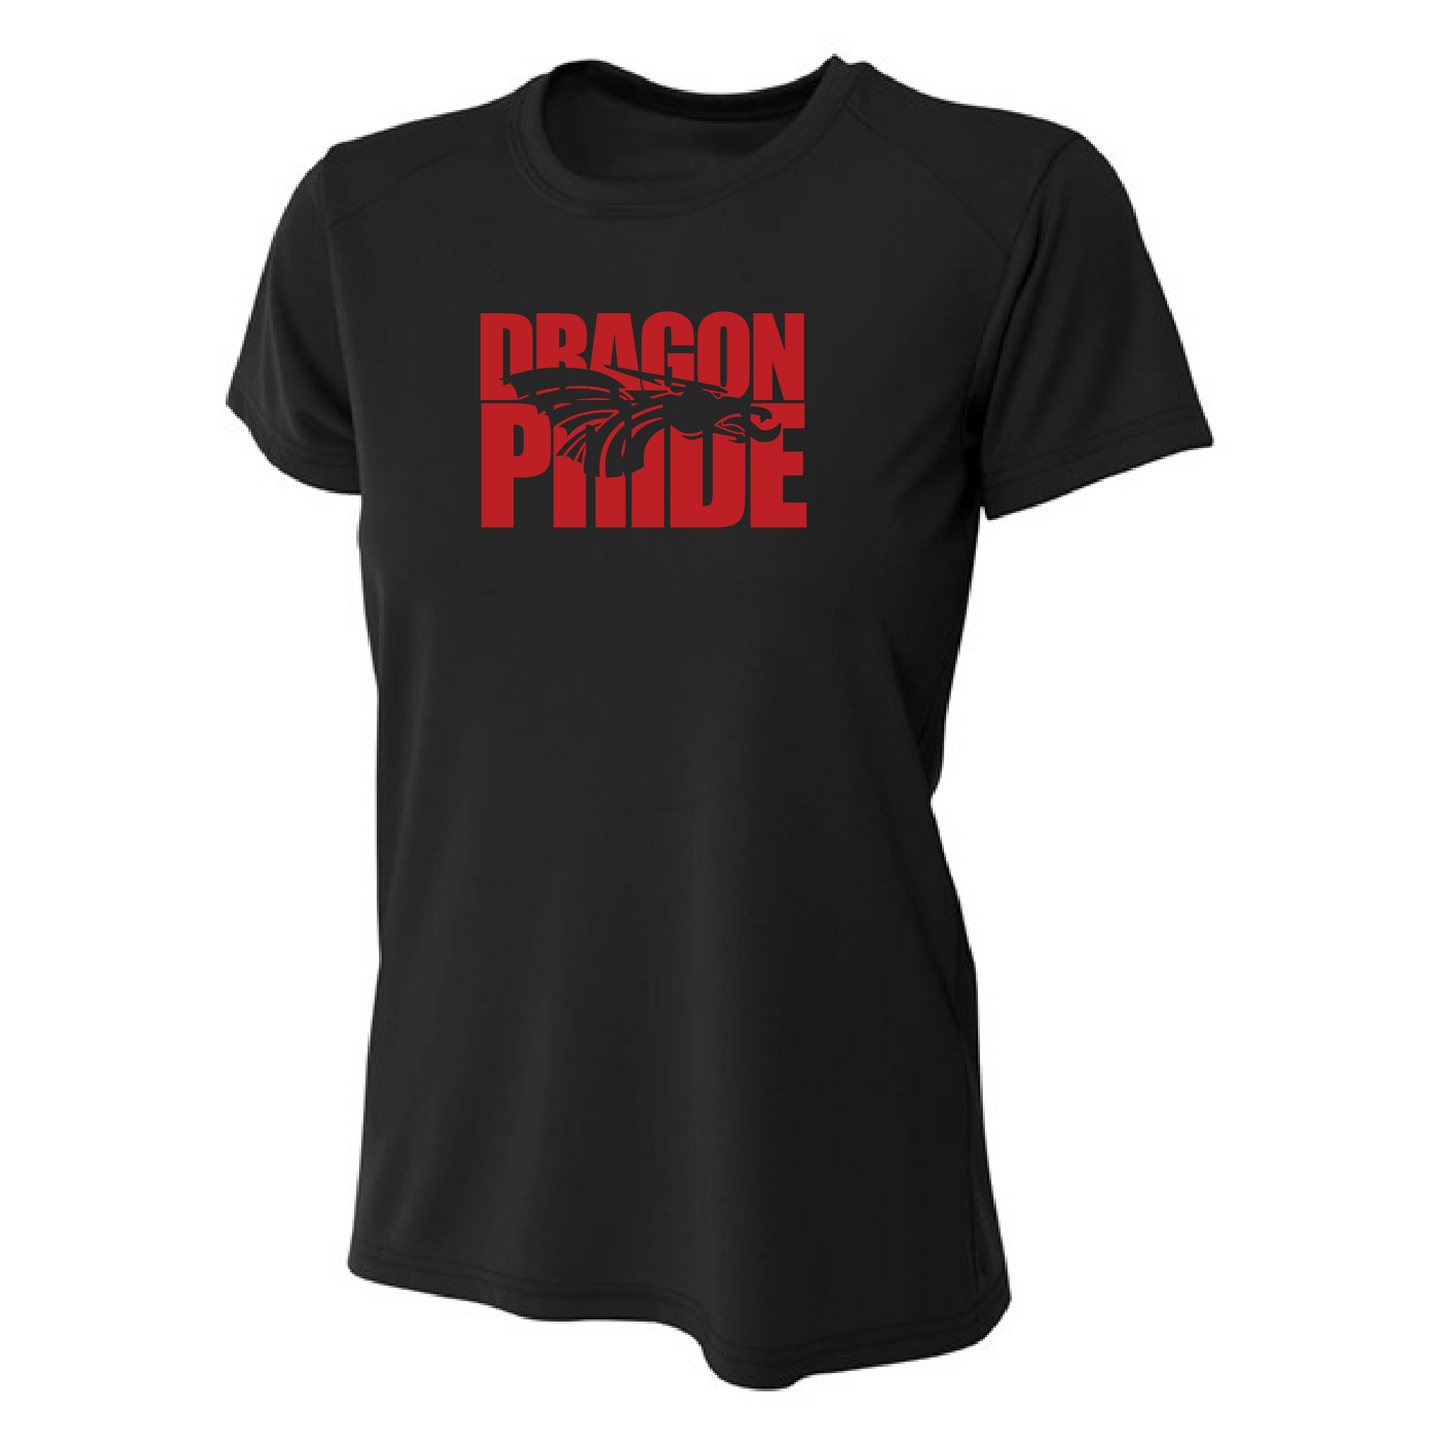 Womens S/S T-Shirt - Dragon Pride